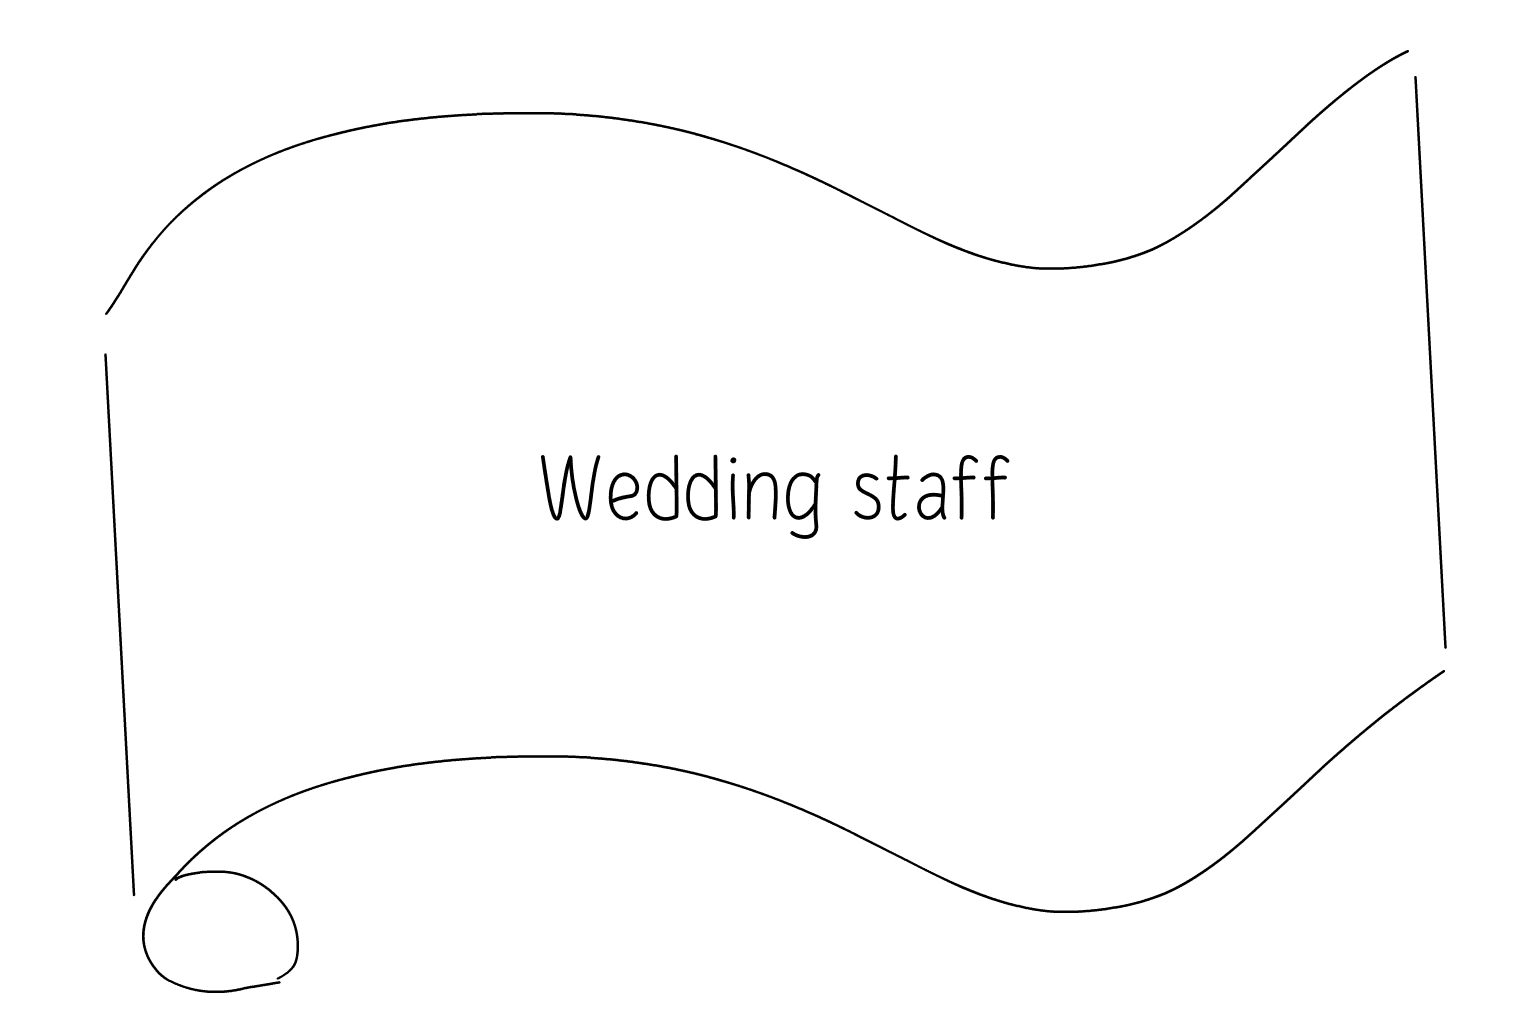 Ilustrácia svadobného personálu